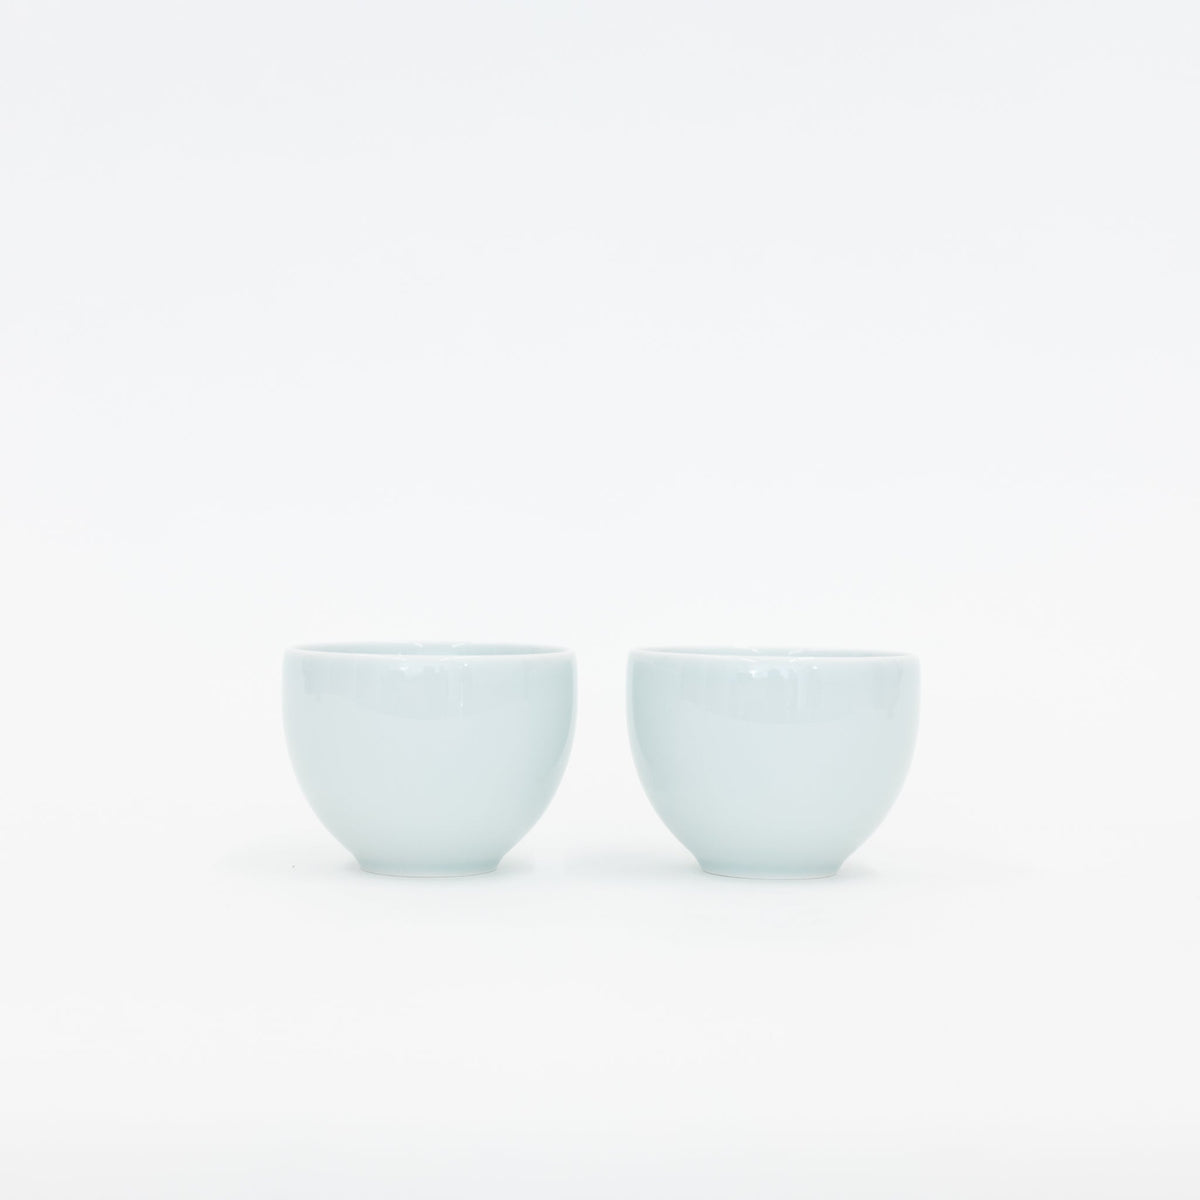 Hakusan Porcelain Bianco Espresso Cup – maeda-en